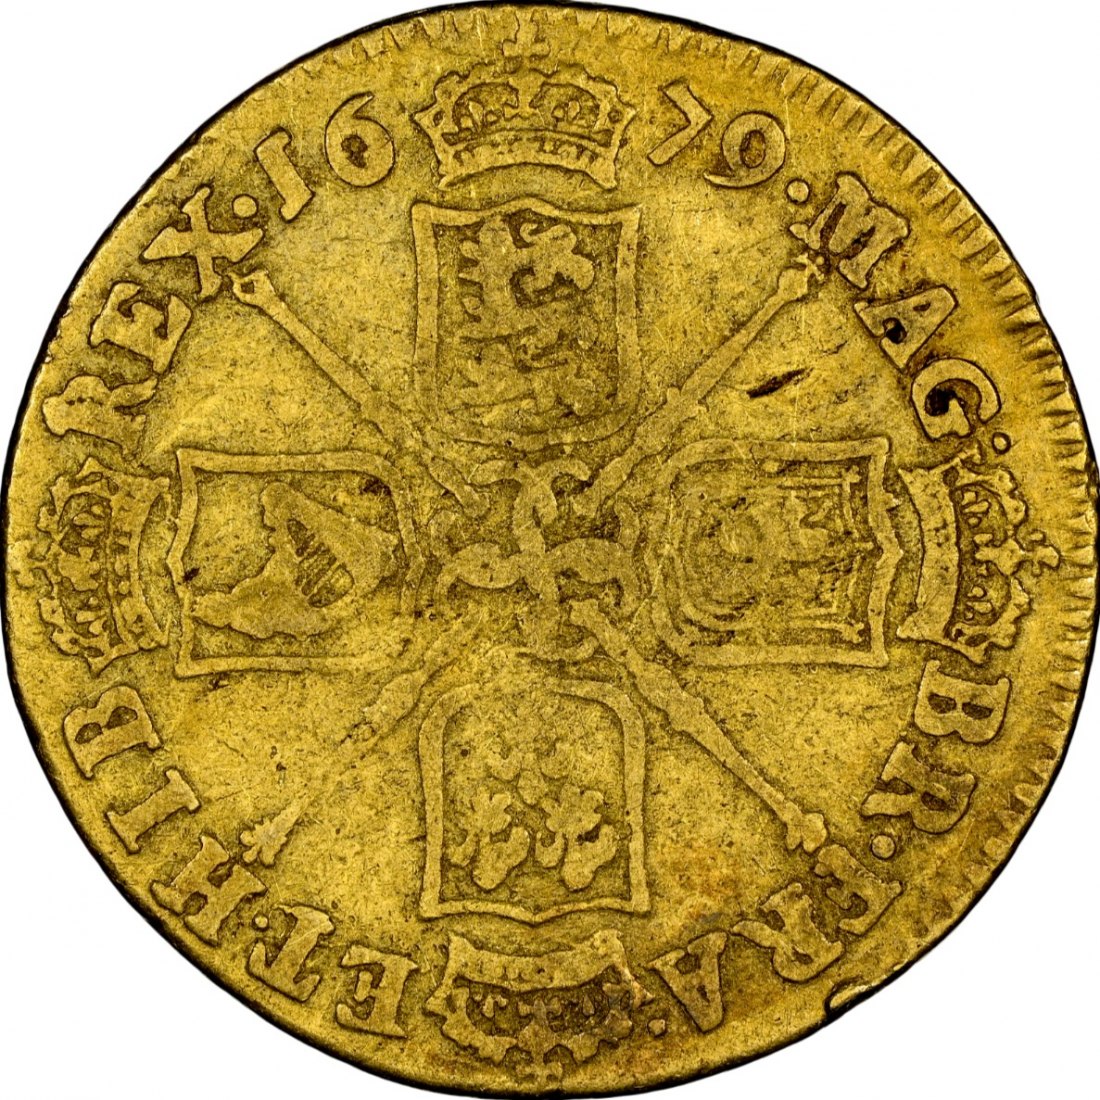  UK 1 Guinea 1679 | NGC VG8 | Charles II.   